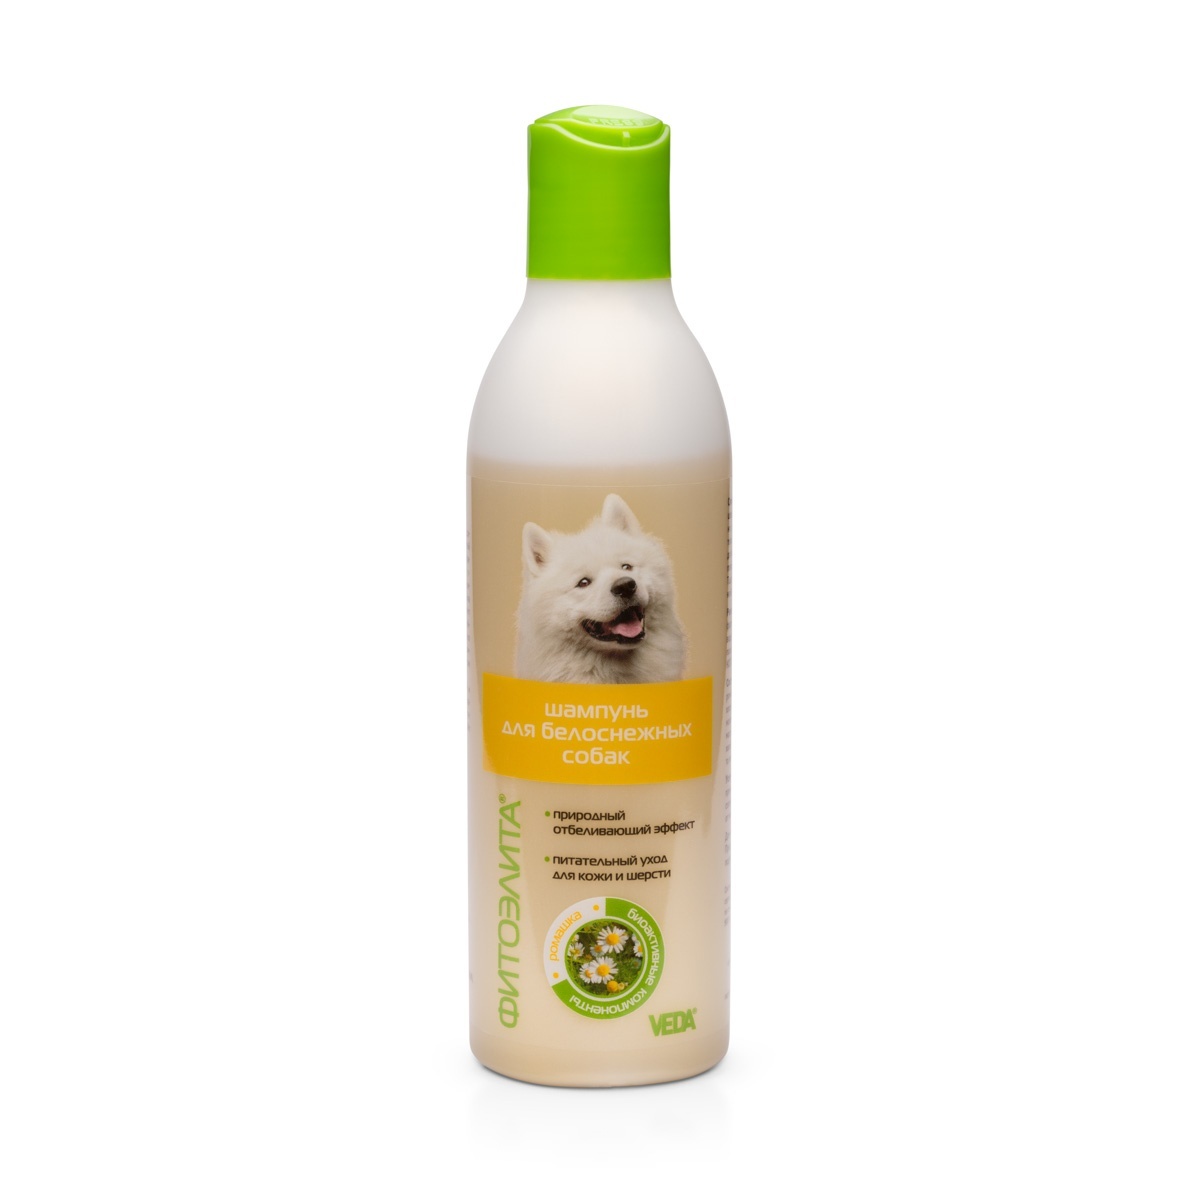 Веда Веда шампунь для белоснежных собак (220 г) цена и фото